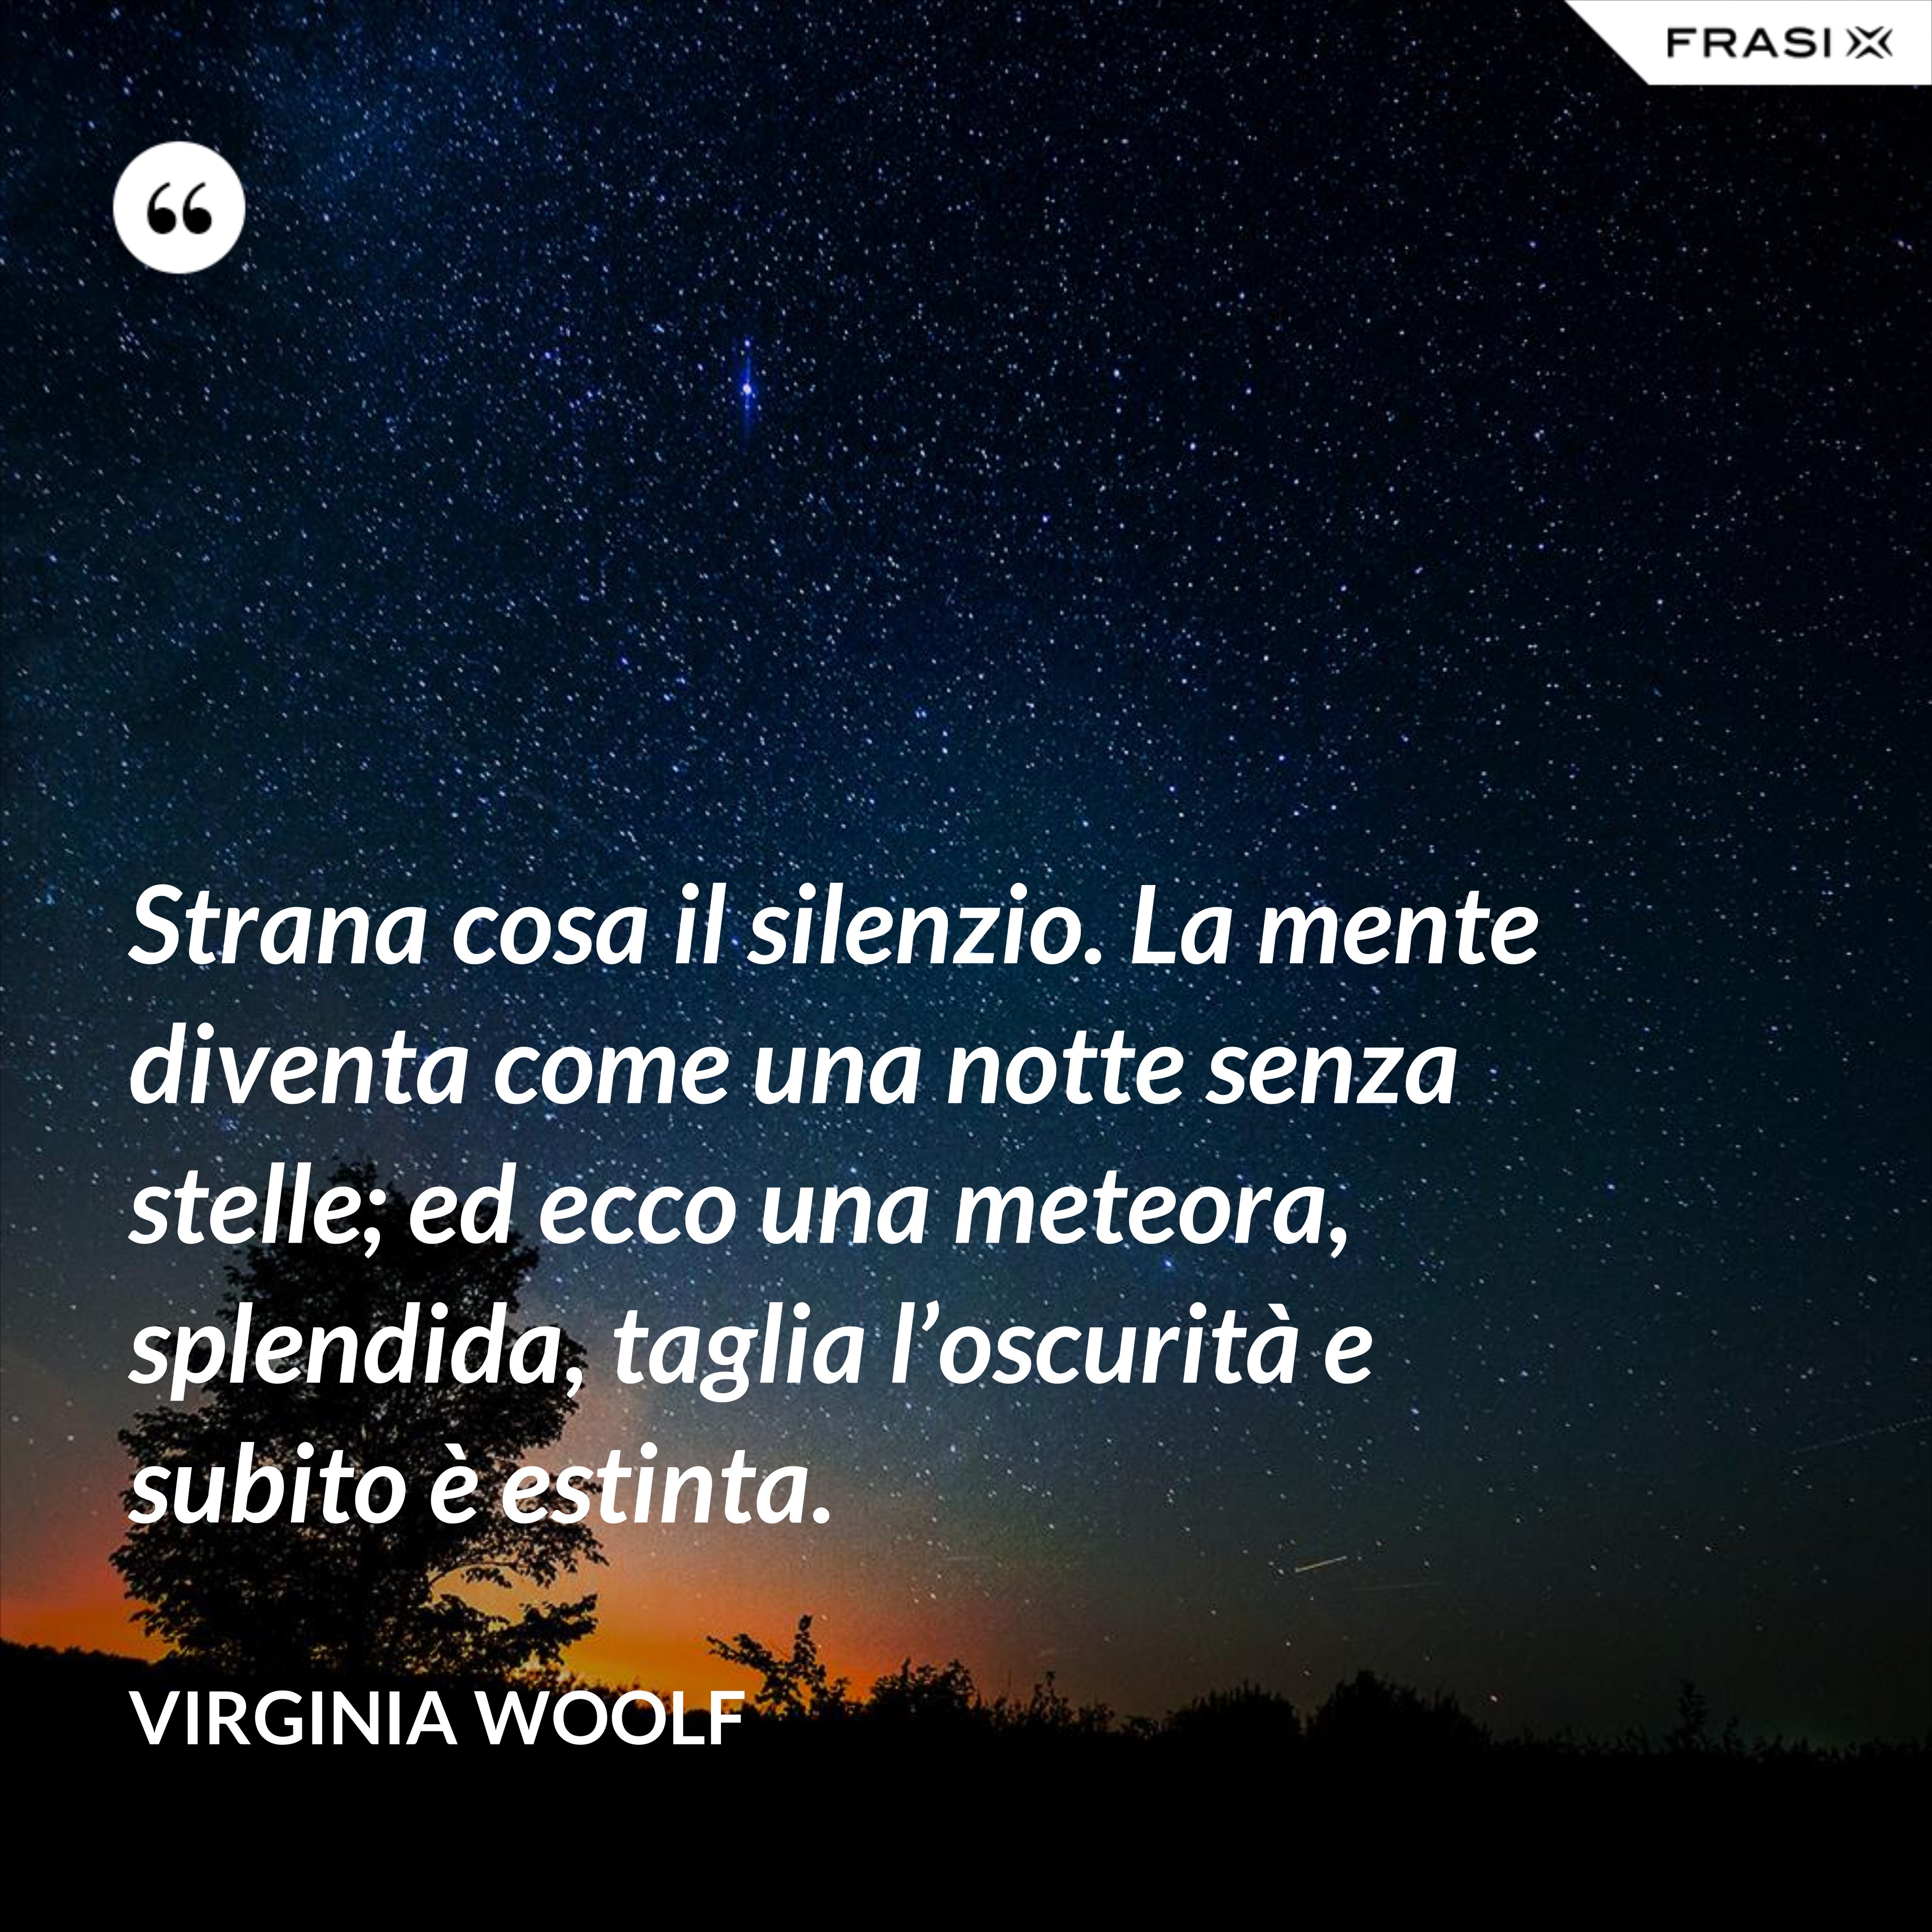 Strana cosa il silenzio. La mente diventa come una notte senza stelle; ed ecco una meteora, splendida, taglia l’oscurità e subito è estinta. - Virginia Woolf